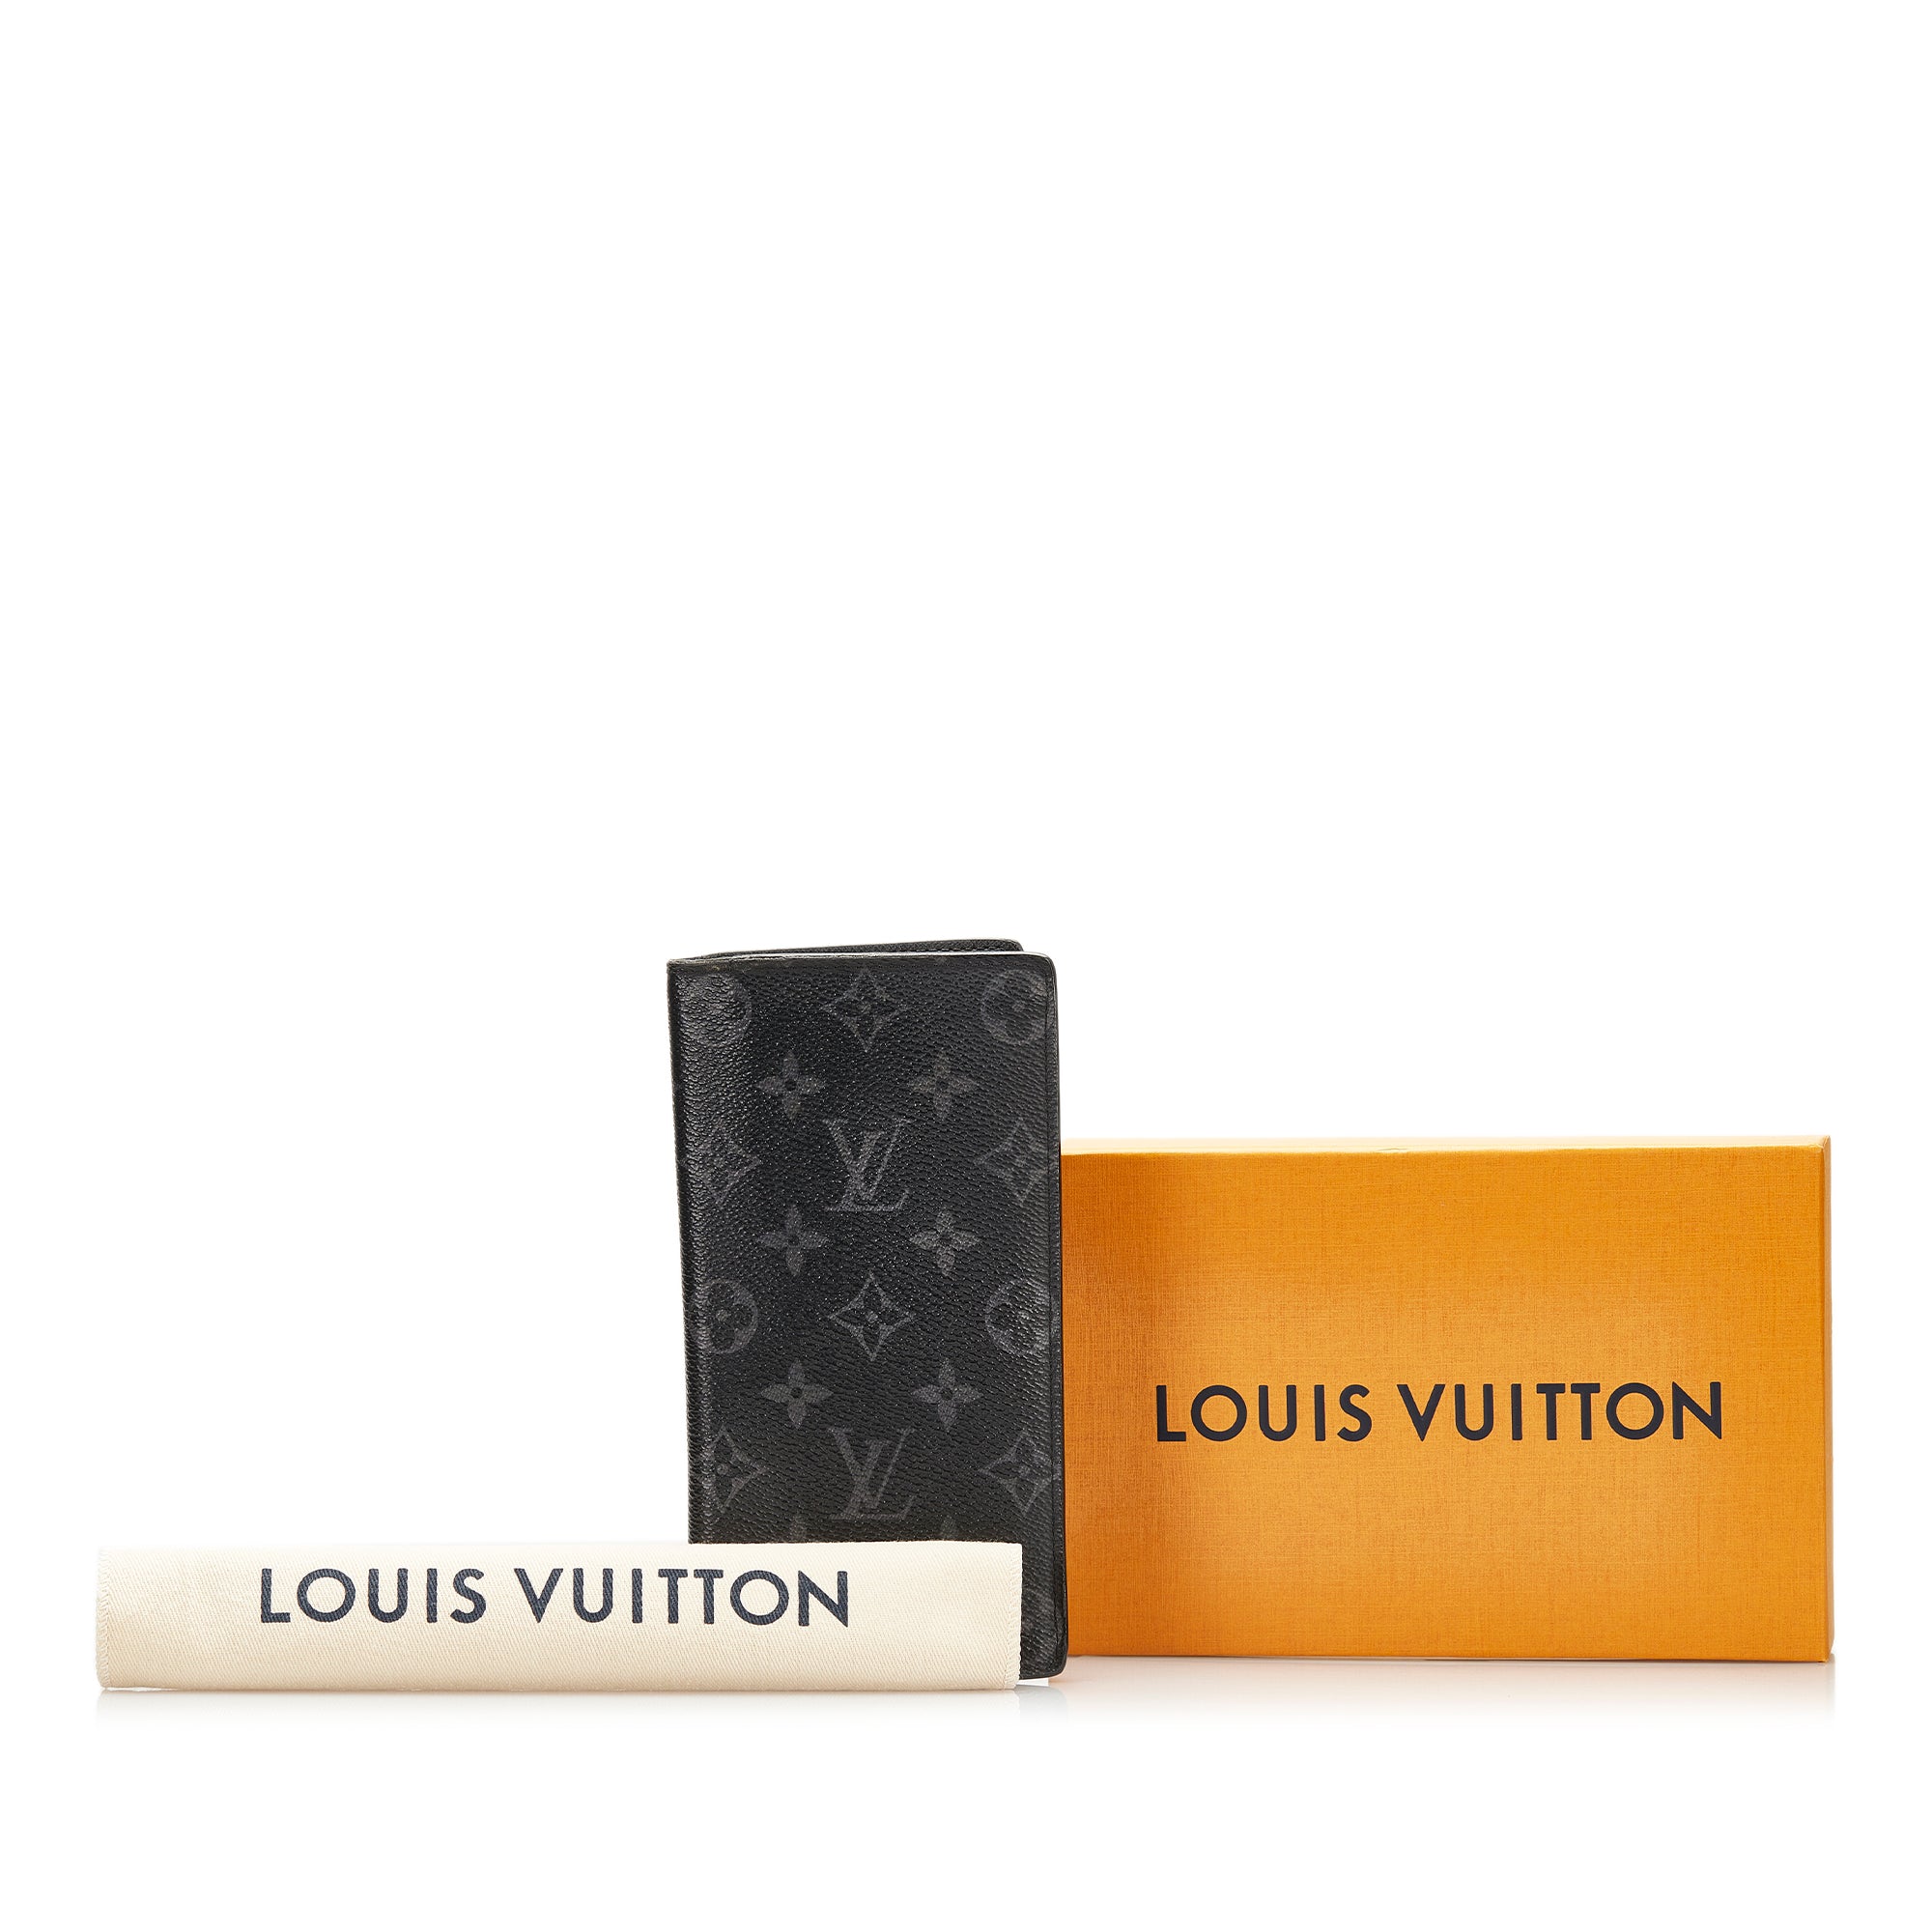 Louis Vuitton Trainer Mule